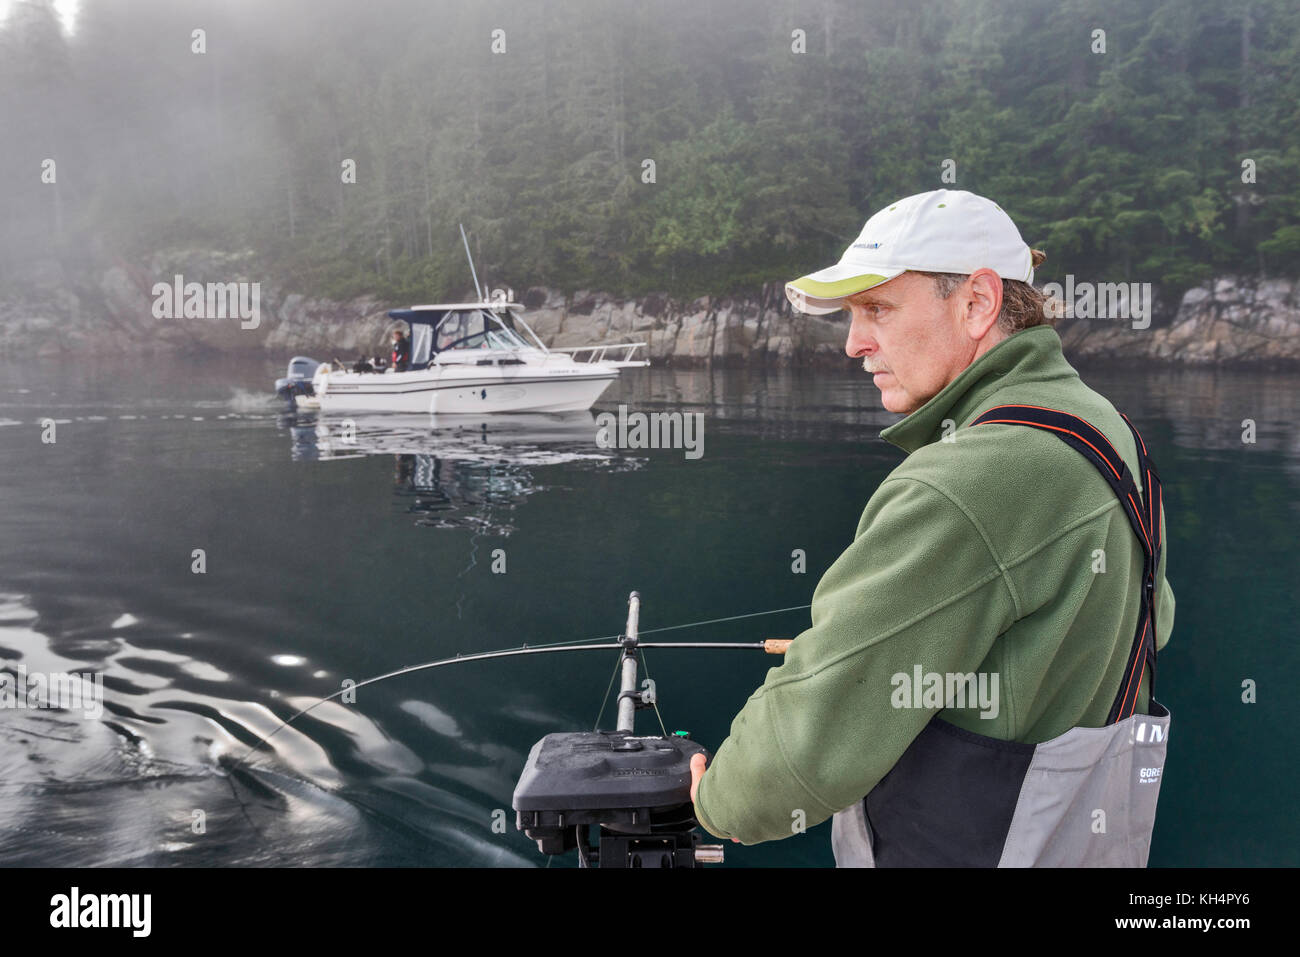 Erwachsener mittleren Alters mit Angelrute auf dem Boot, anderes vorbeifahrender Boot, nebeliger Morgen in der Johnstone Strait vor Vancouver Island, British Columbia, Kanada Stockfoto